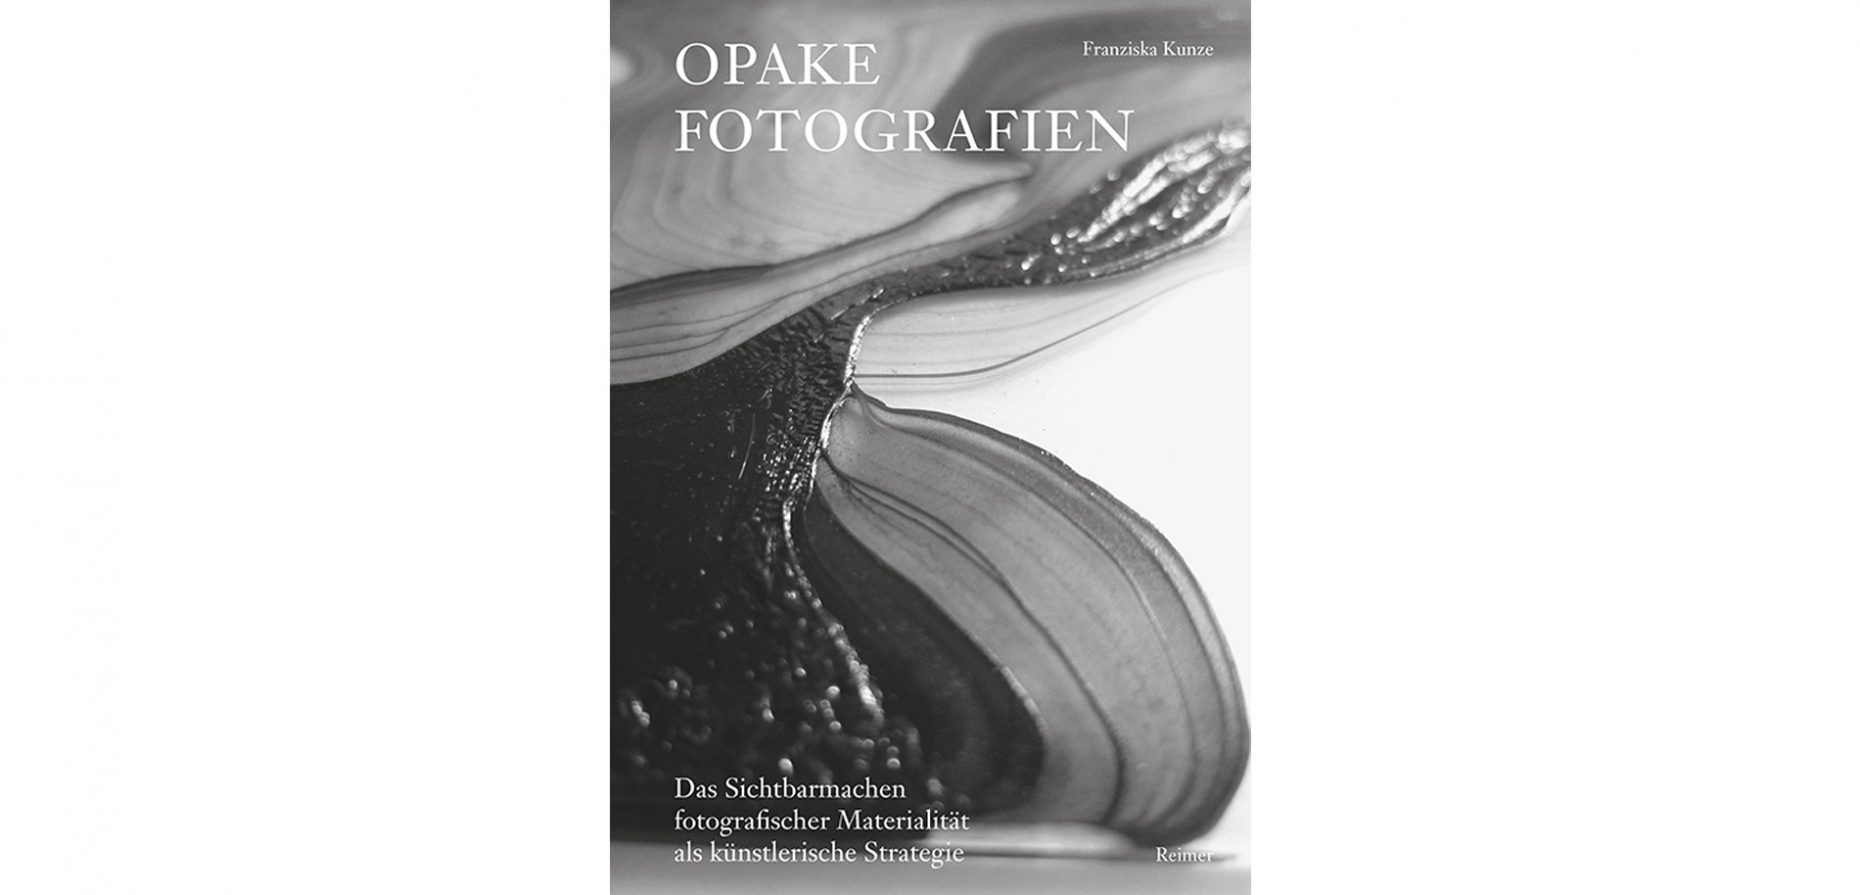 Opake Fotografien stellen das Sichtbarmachen der physischen und chemischen Beschaffenheit des fotografischen Materials in den Mittelpunkt der künstlerischen Auseinandersetzung. In ihrem neuen Buch widmet sich Franziska Kunze der Geschichte dieser Bildform.